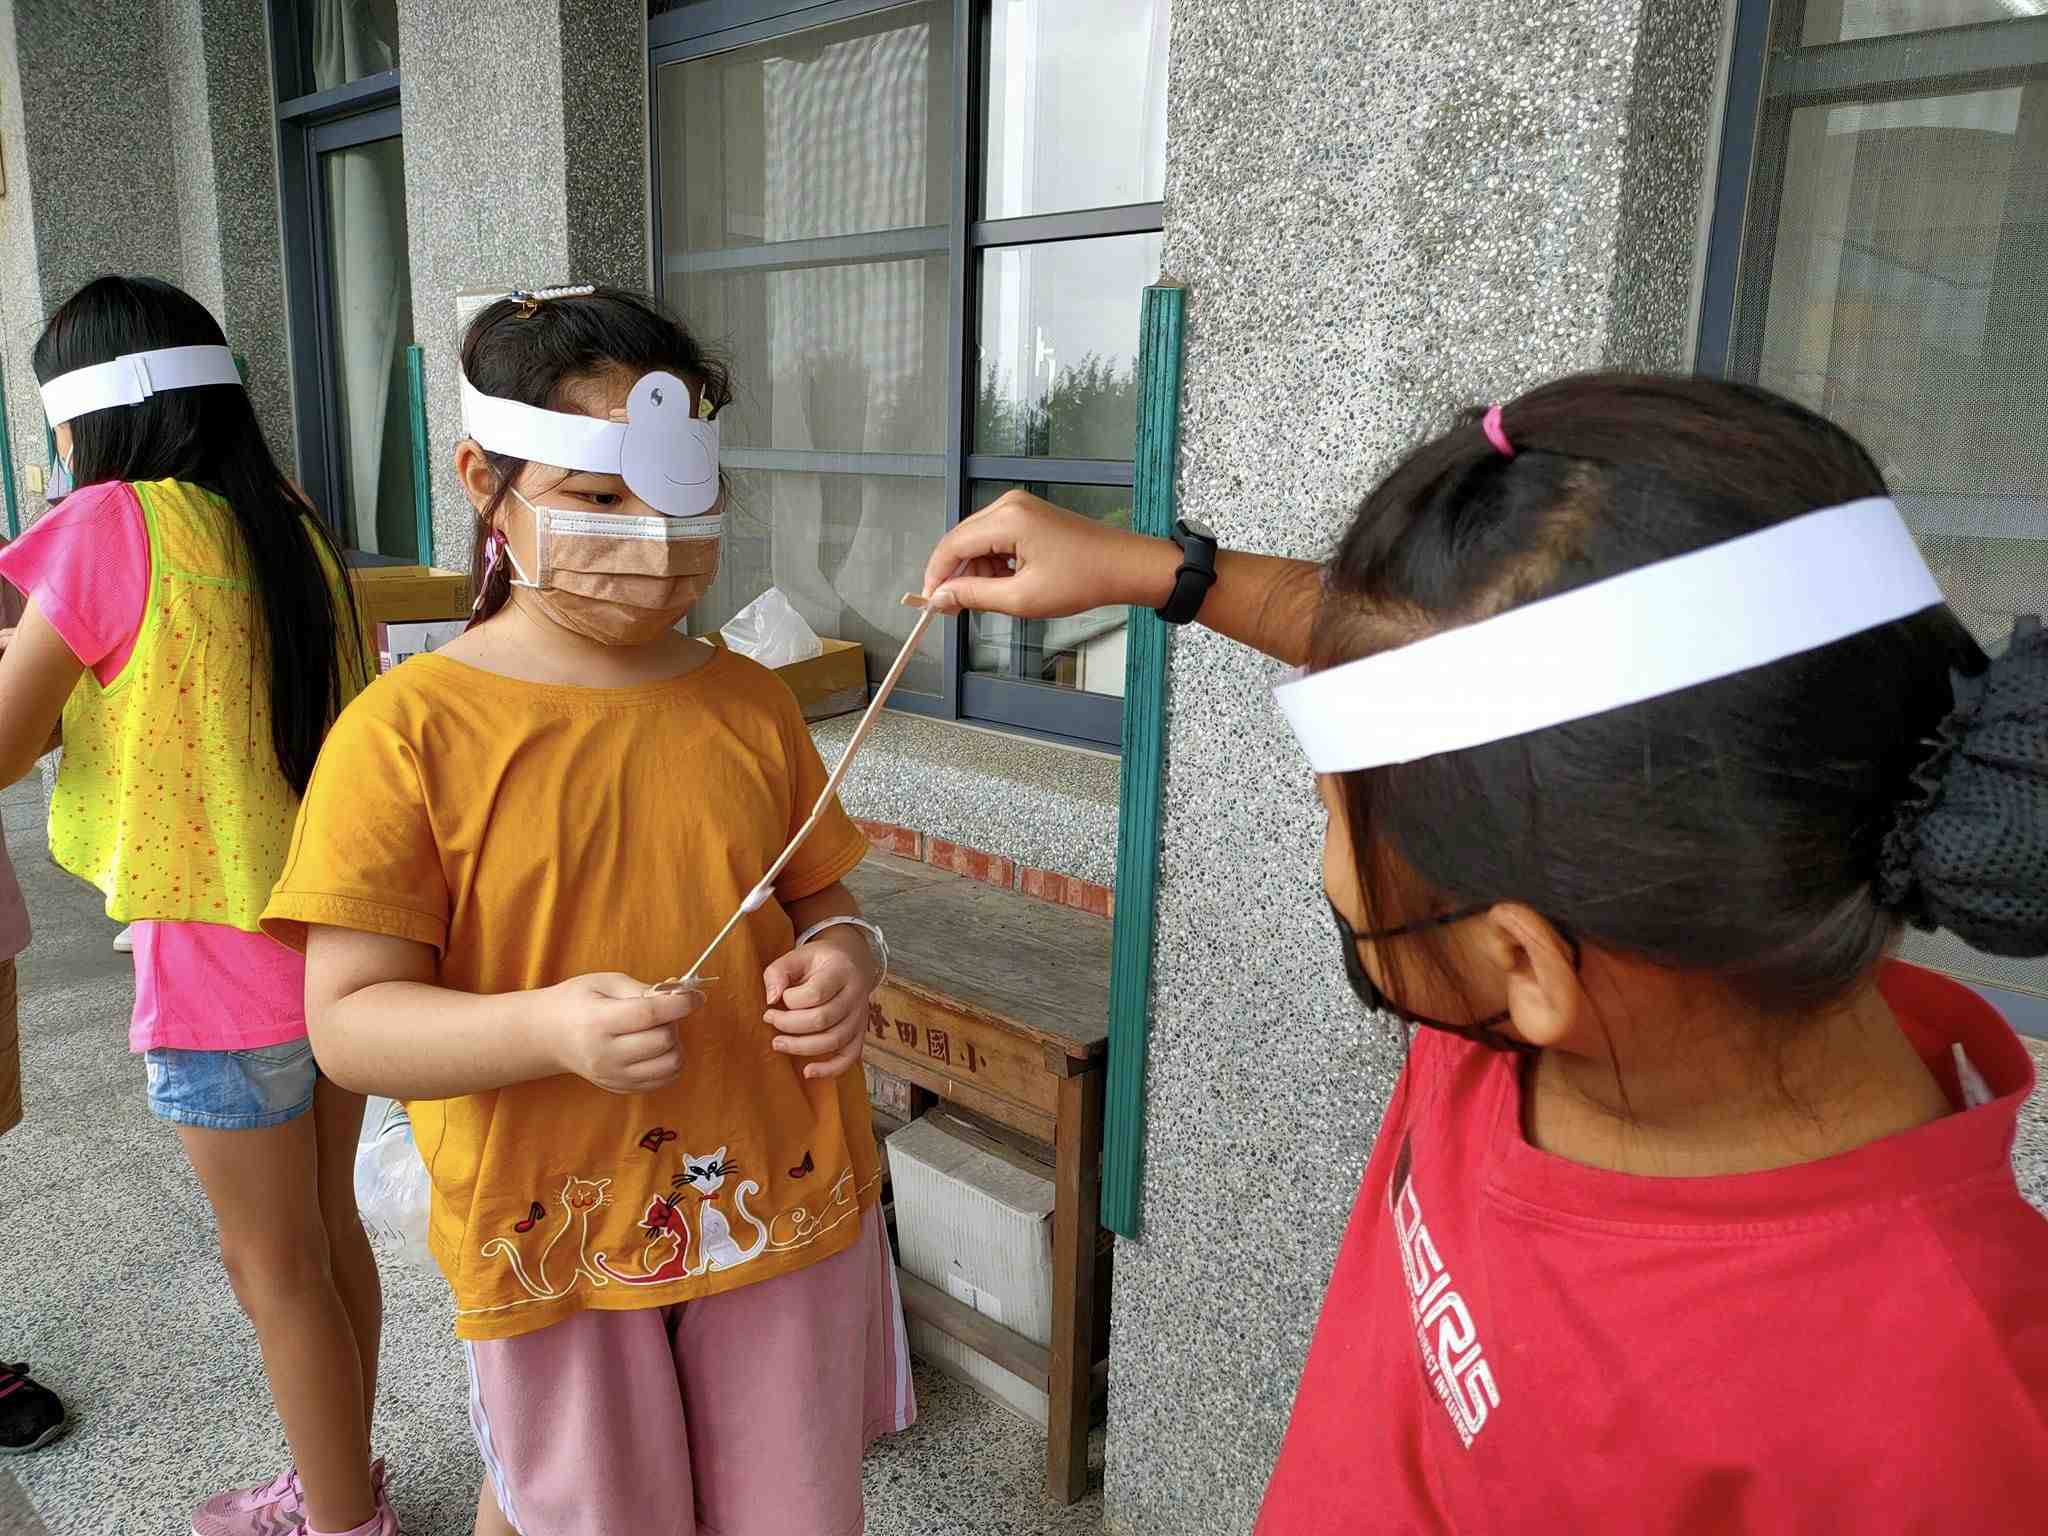 遮眼穿劍讓小朋友自製眼罩遮單眼，破壞雙眼融像。將「雙眼視機能」融入遊戲中，結合團體競賽，大家互助培養默契，更了解雙眼視替我們的生活帶來舒適與重要性